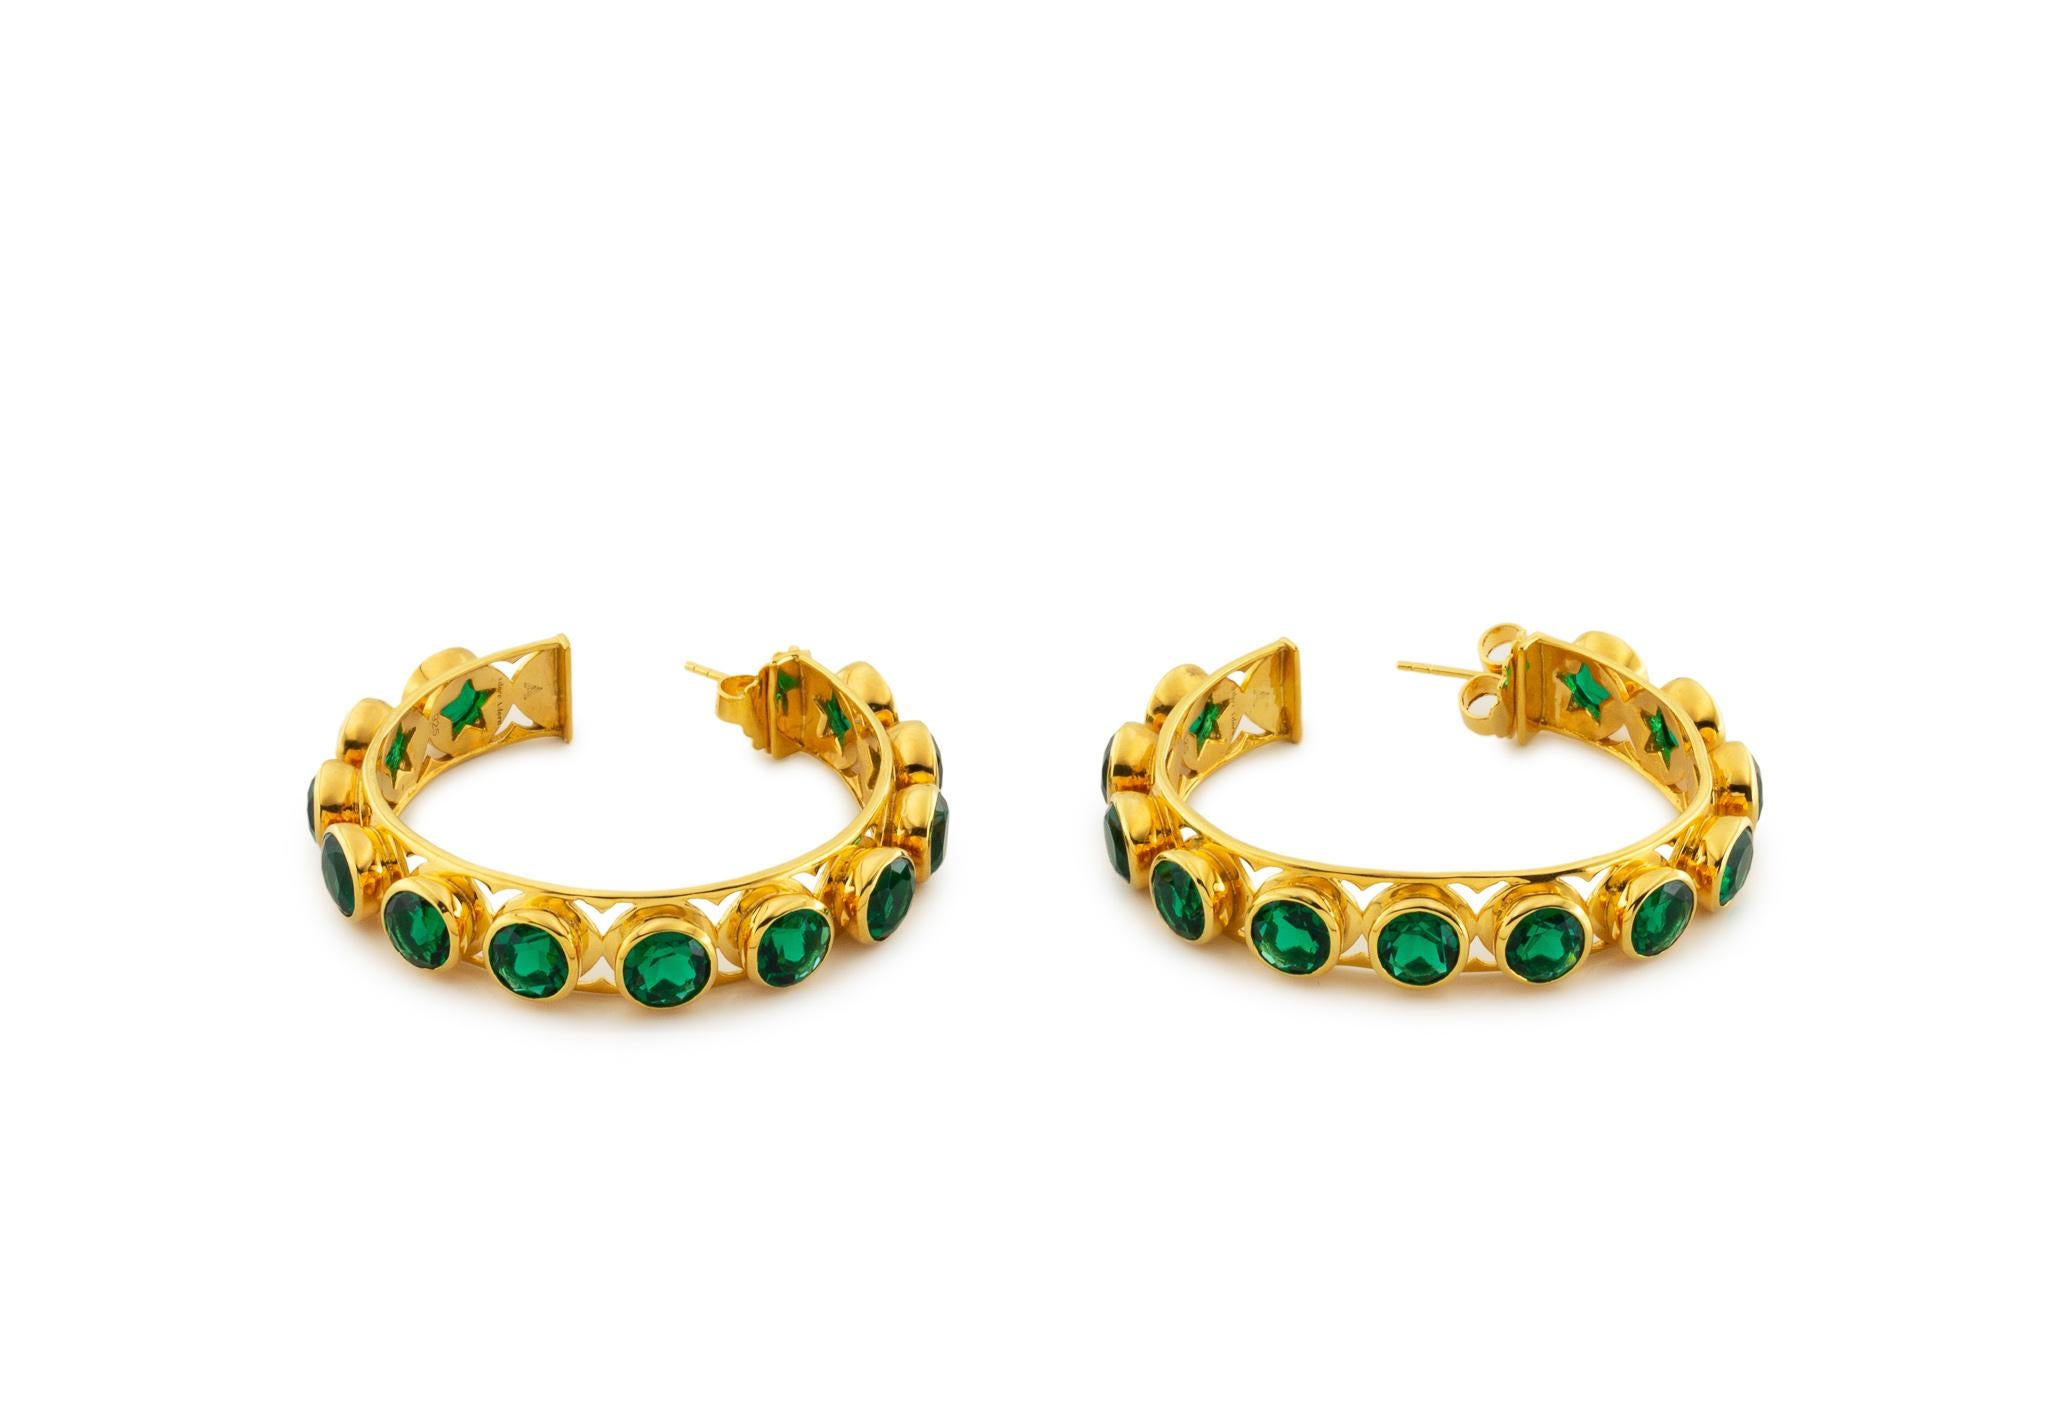 Shari Hoop Earrings in 18K Gold with Multicolored Gemstones For Sale 2